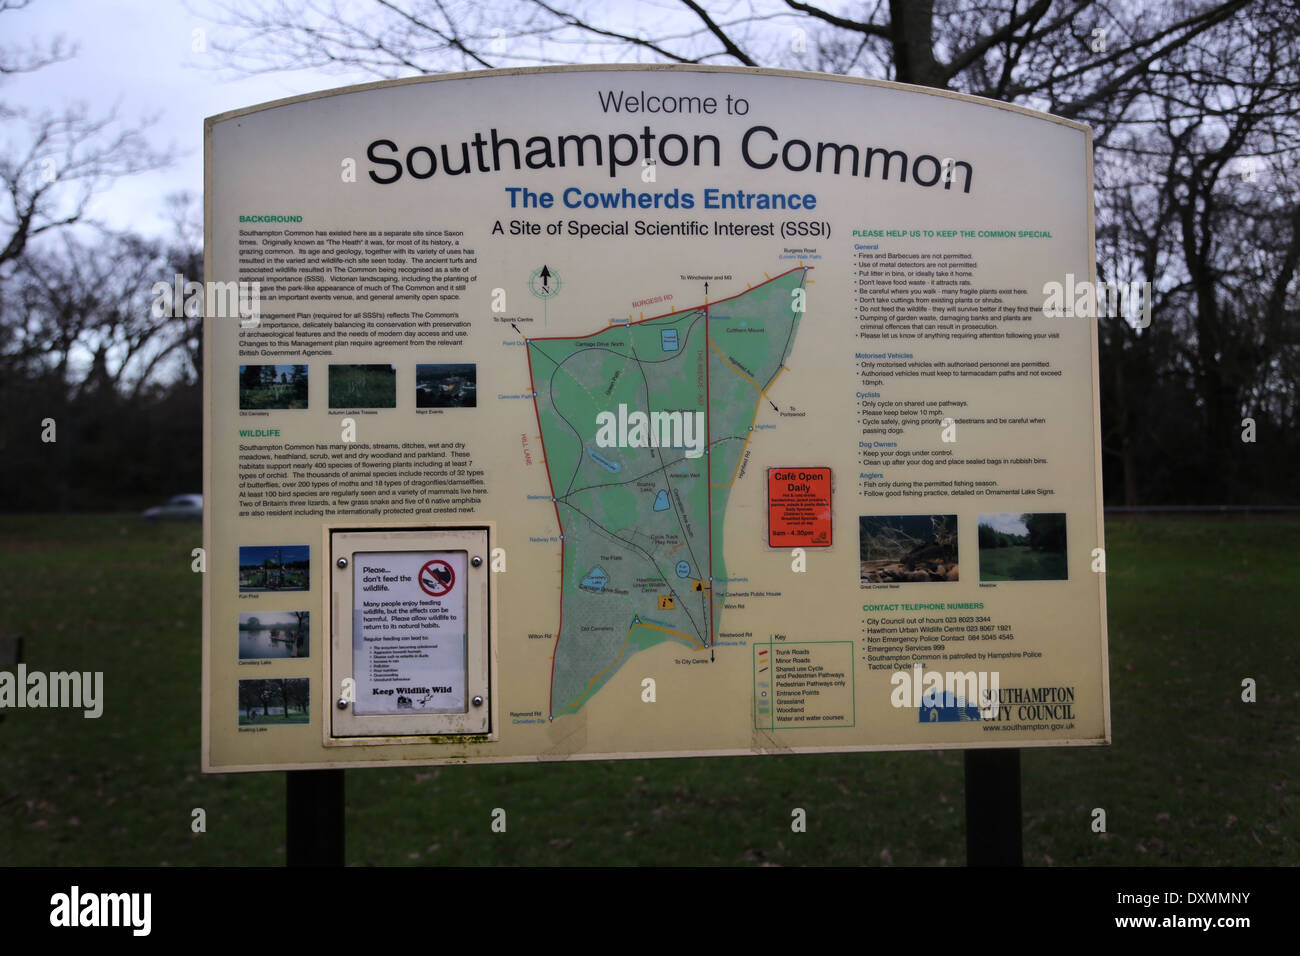 Hampshire England Southampton gemeinsame Kuhhirten Eingang Zeichen Site Of Special Scientific Interest (SSSI) Stockfoto